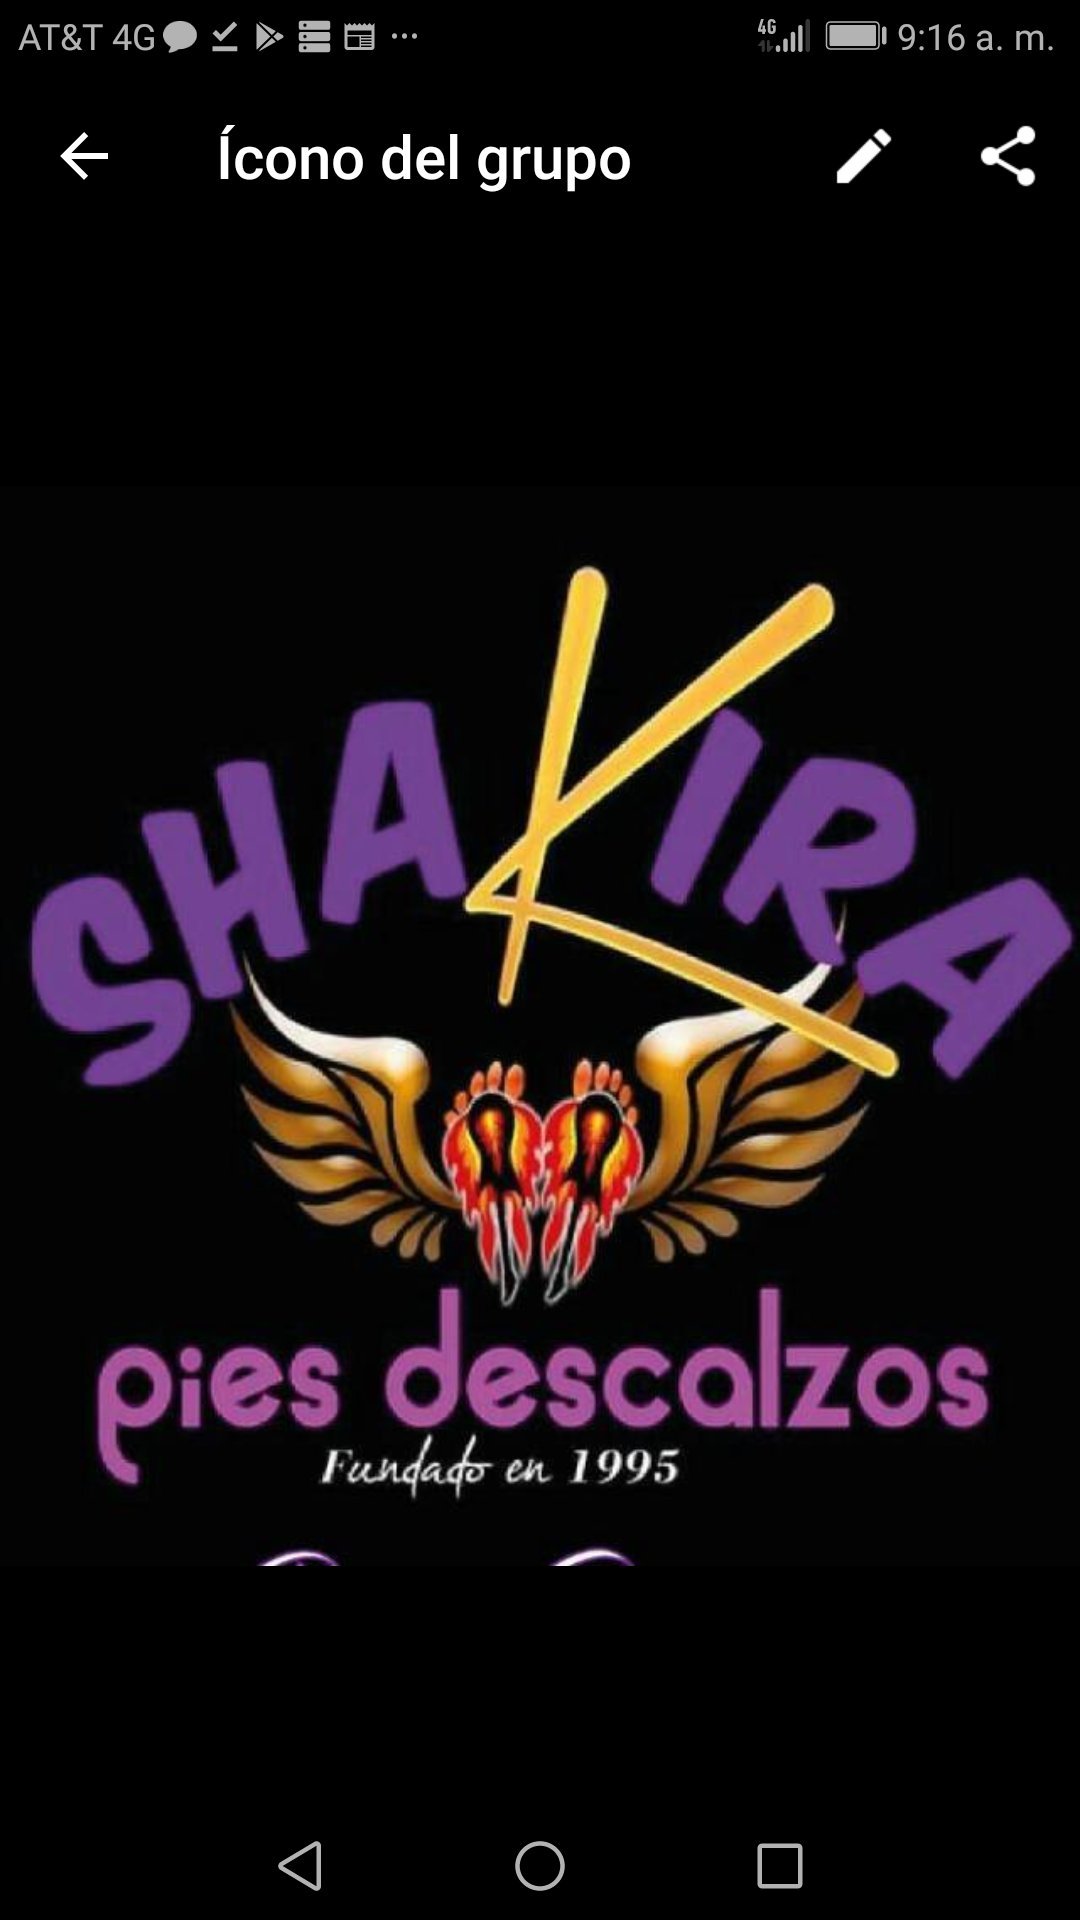 Shakira #PiesDescalzos👣. El primer club de Shakira fundado en 1995. Más de 23 años al lado de nuestra estrella 
@Shakira